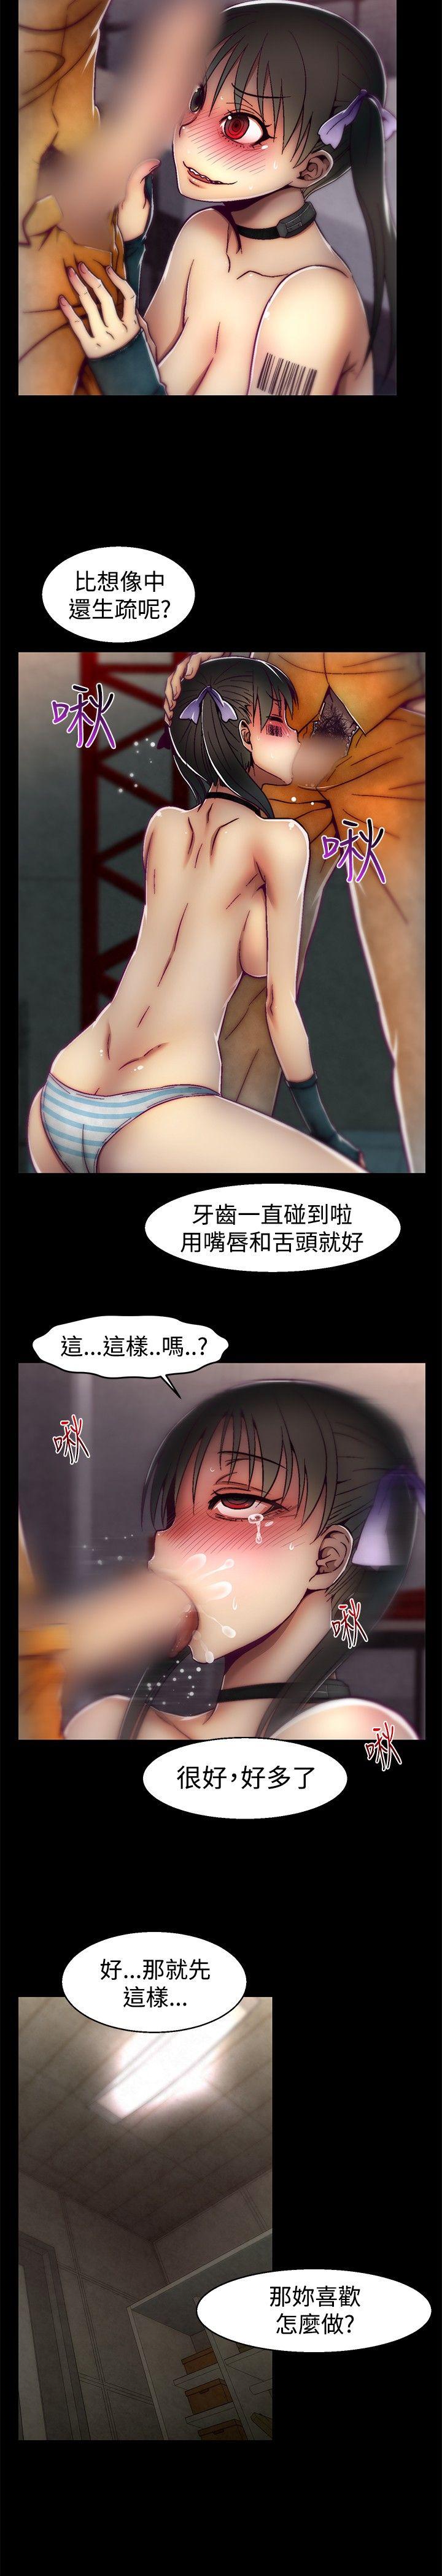 韩国污漫画 啪啪啪調教所 第21话 15